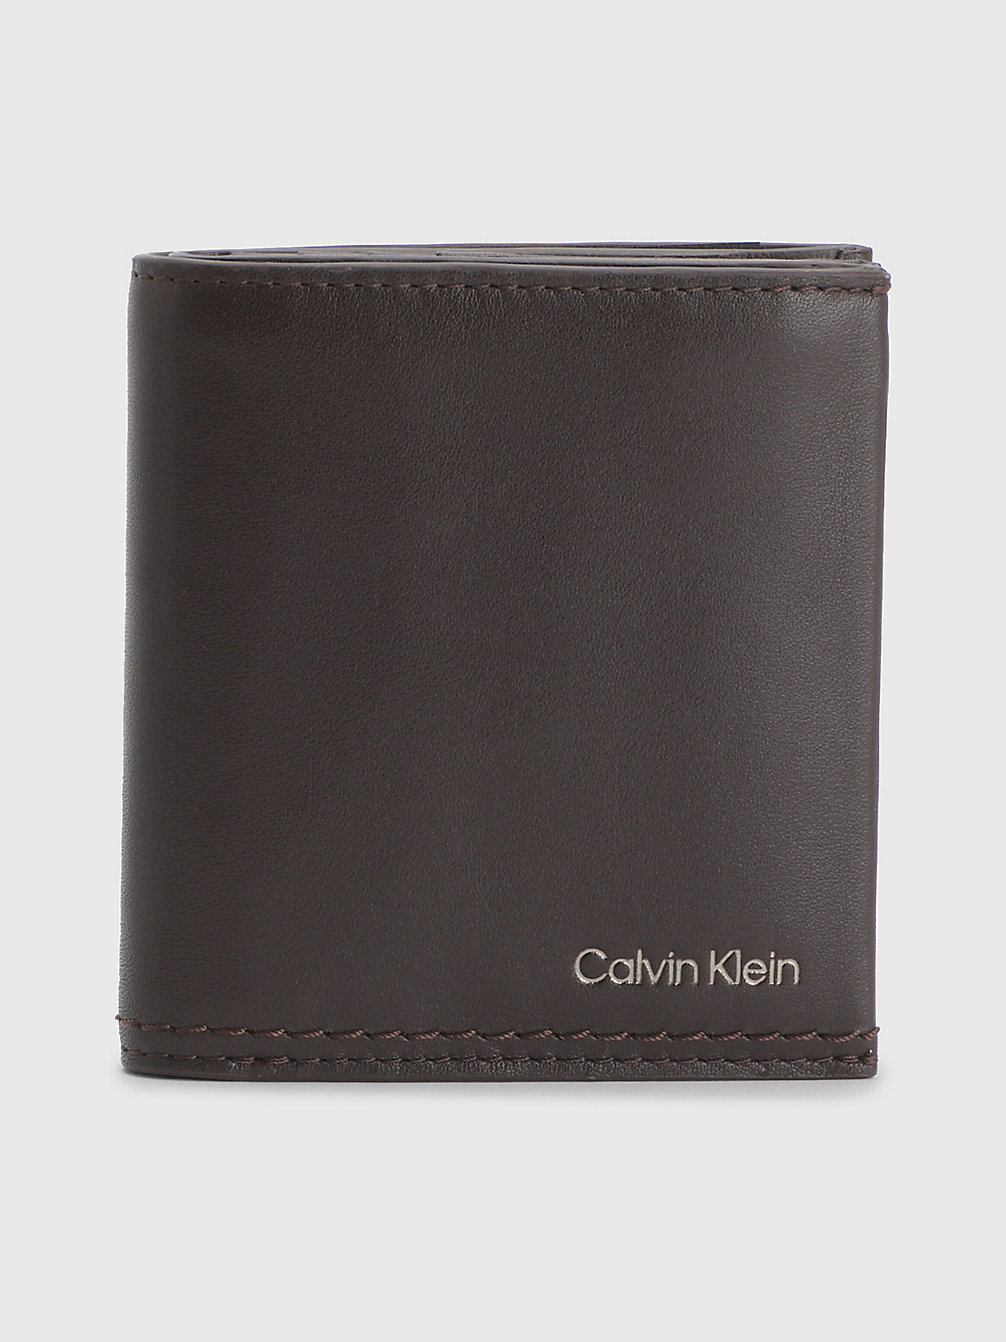 DARK BROWN Leather Rfid Billfold Wallet undefined men Calvin Klein